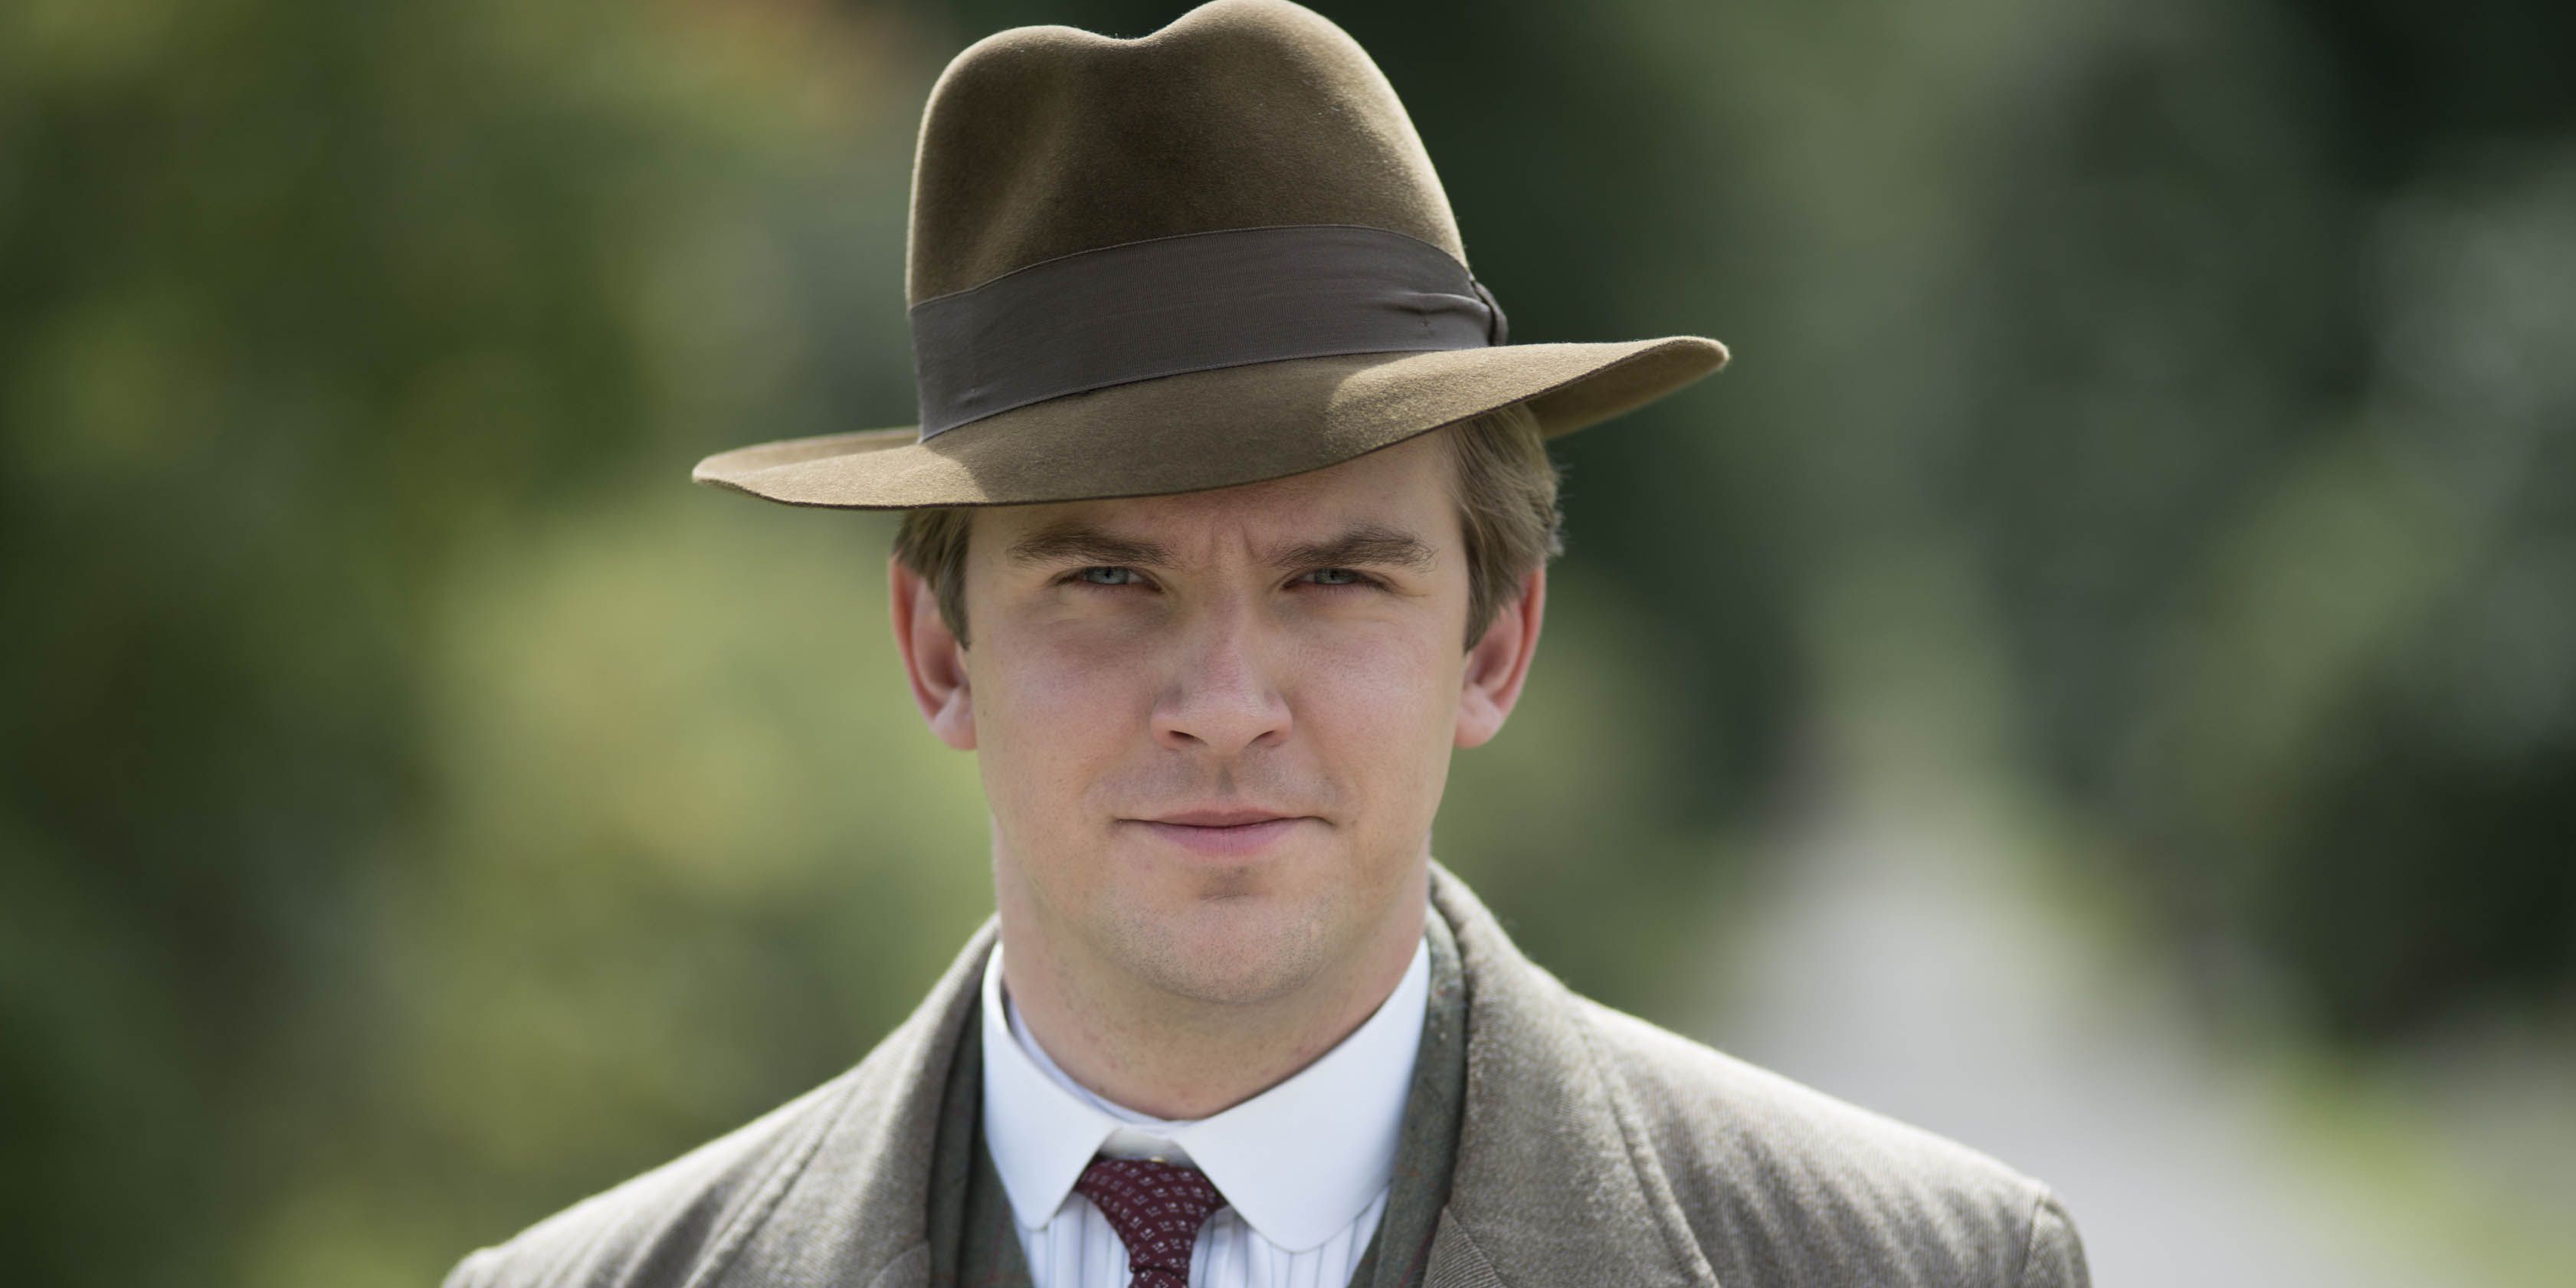 Matthew wearing a hat in Downton Abbey.